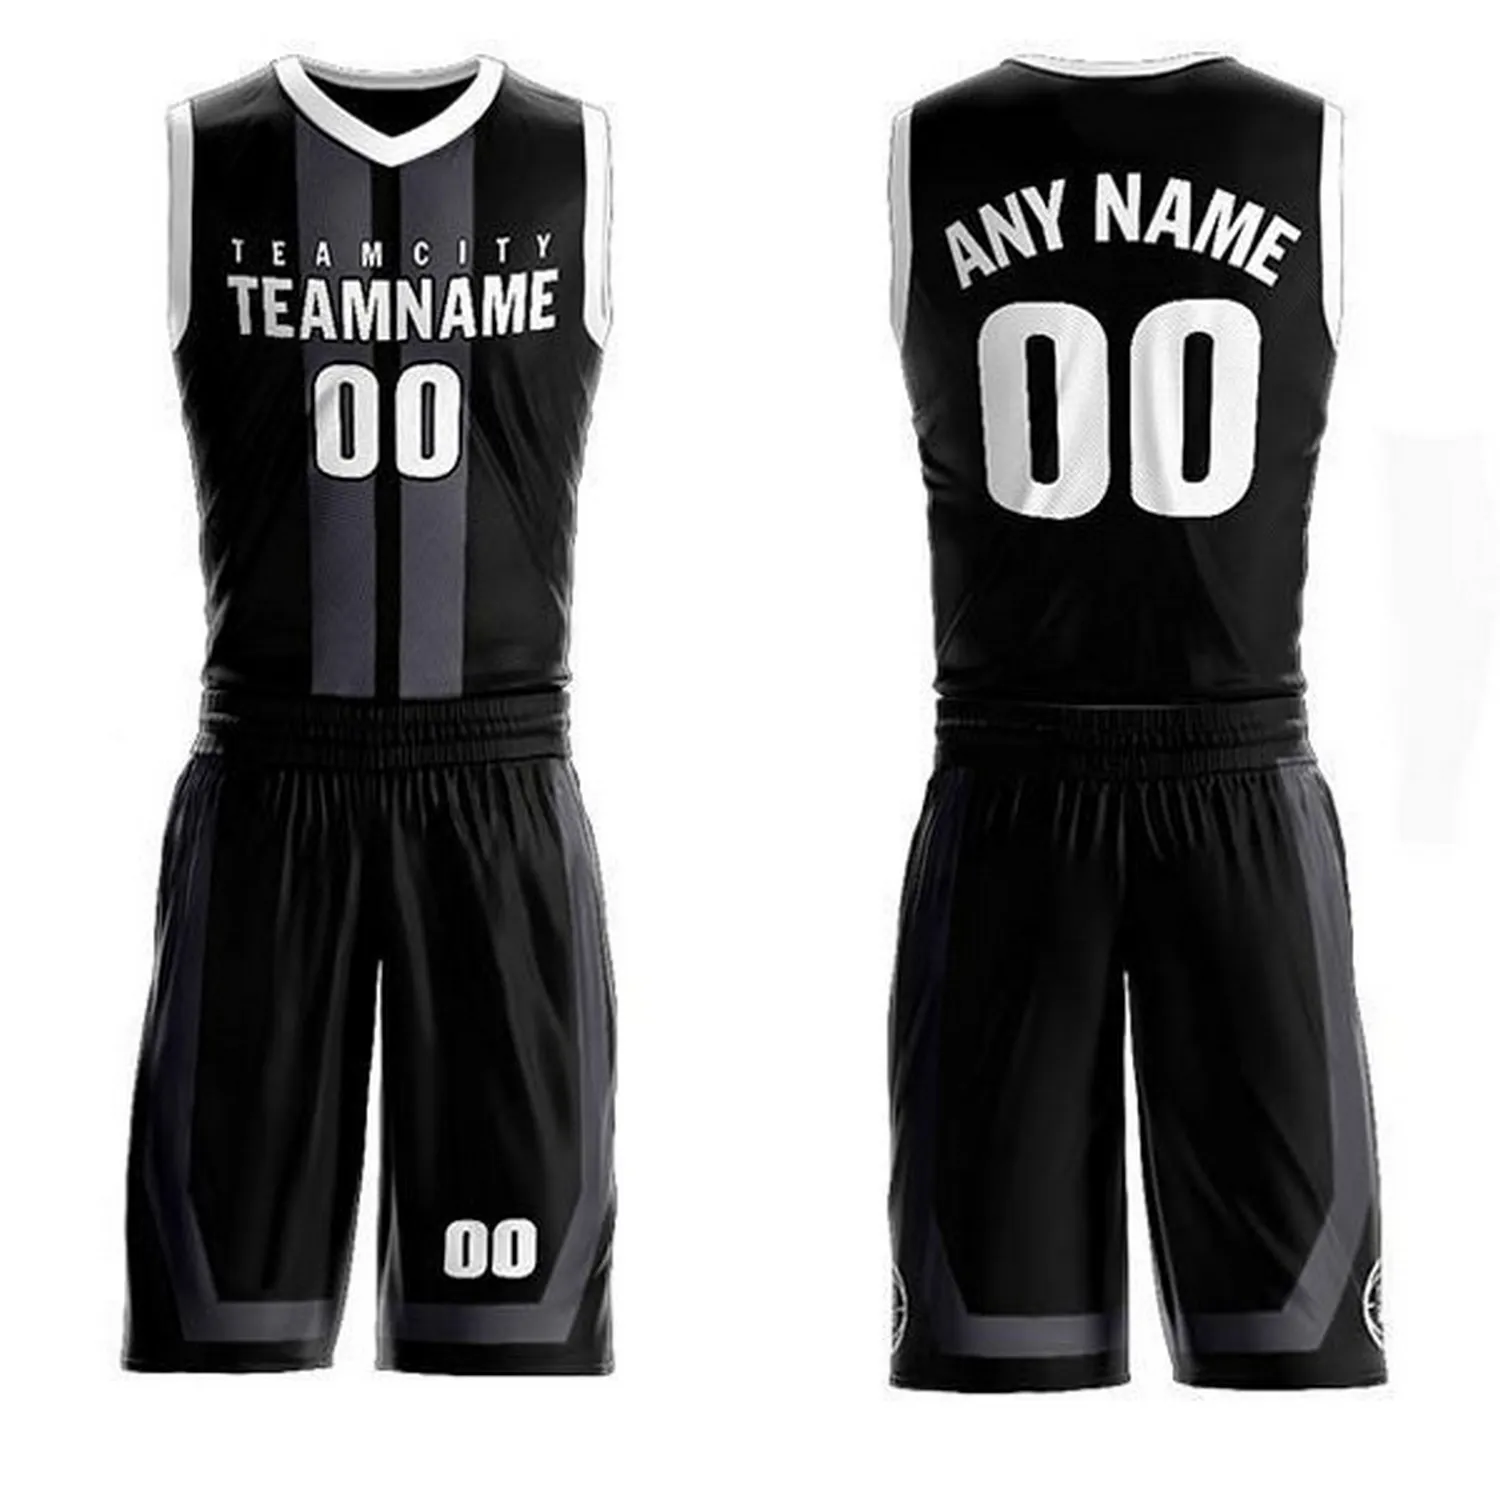 Conjuntos de uniforme de baloncesto para niños, camisetas de color negro